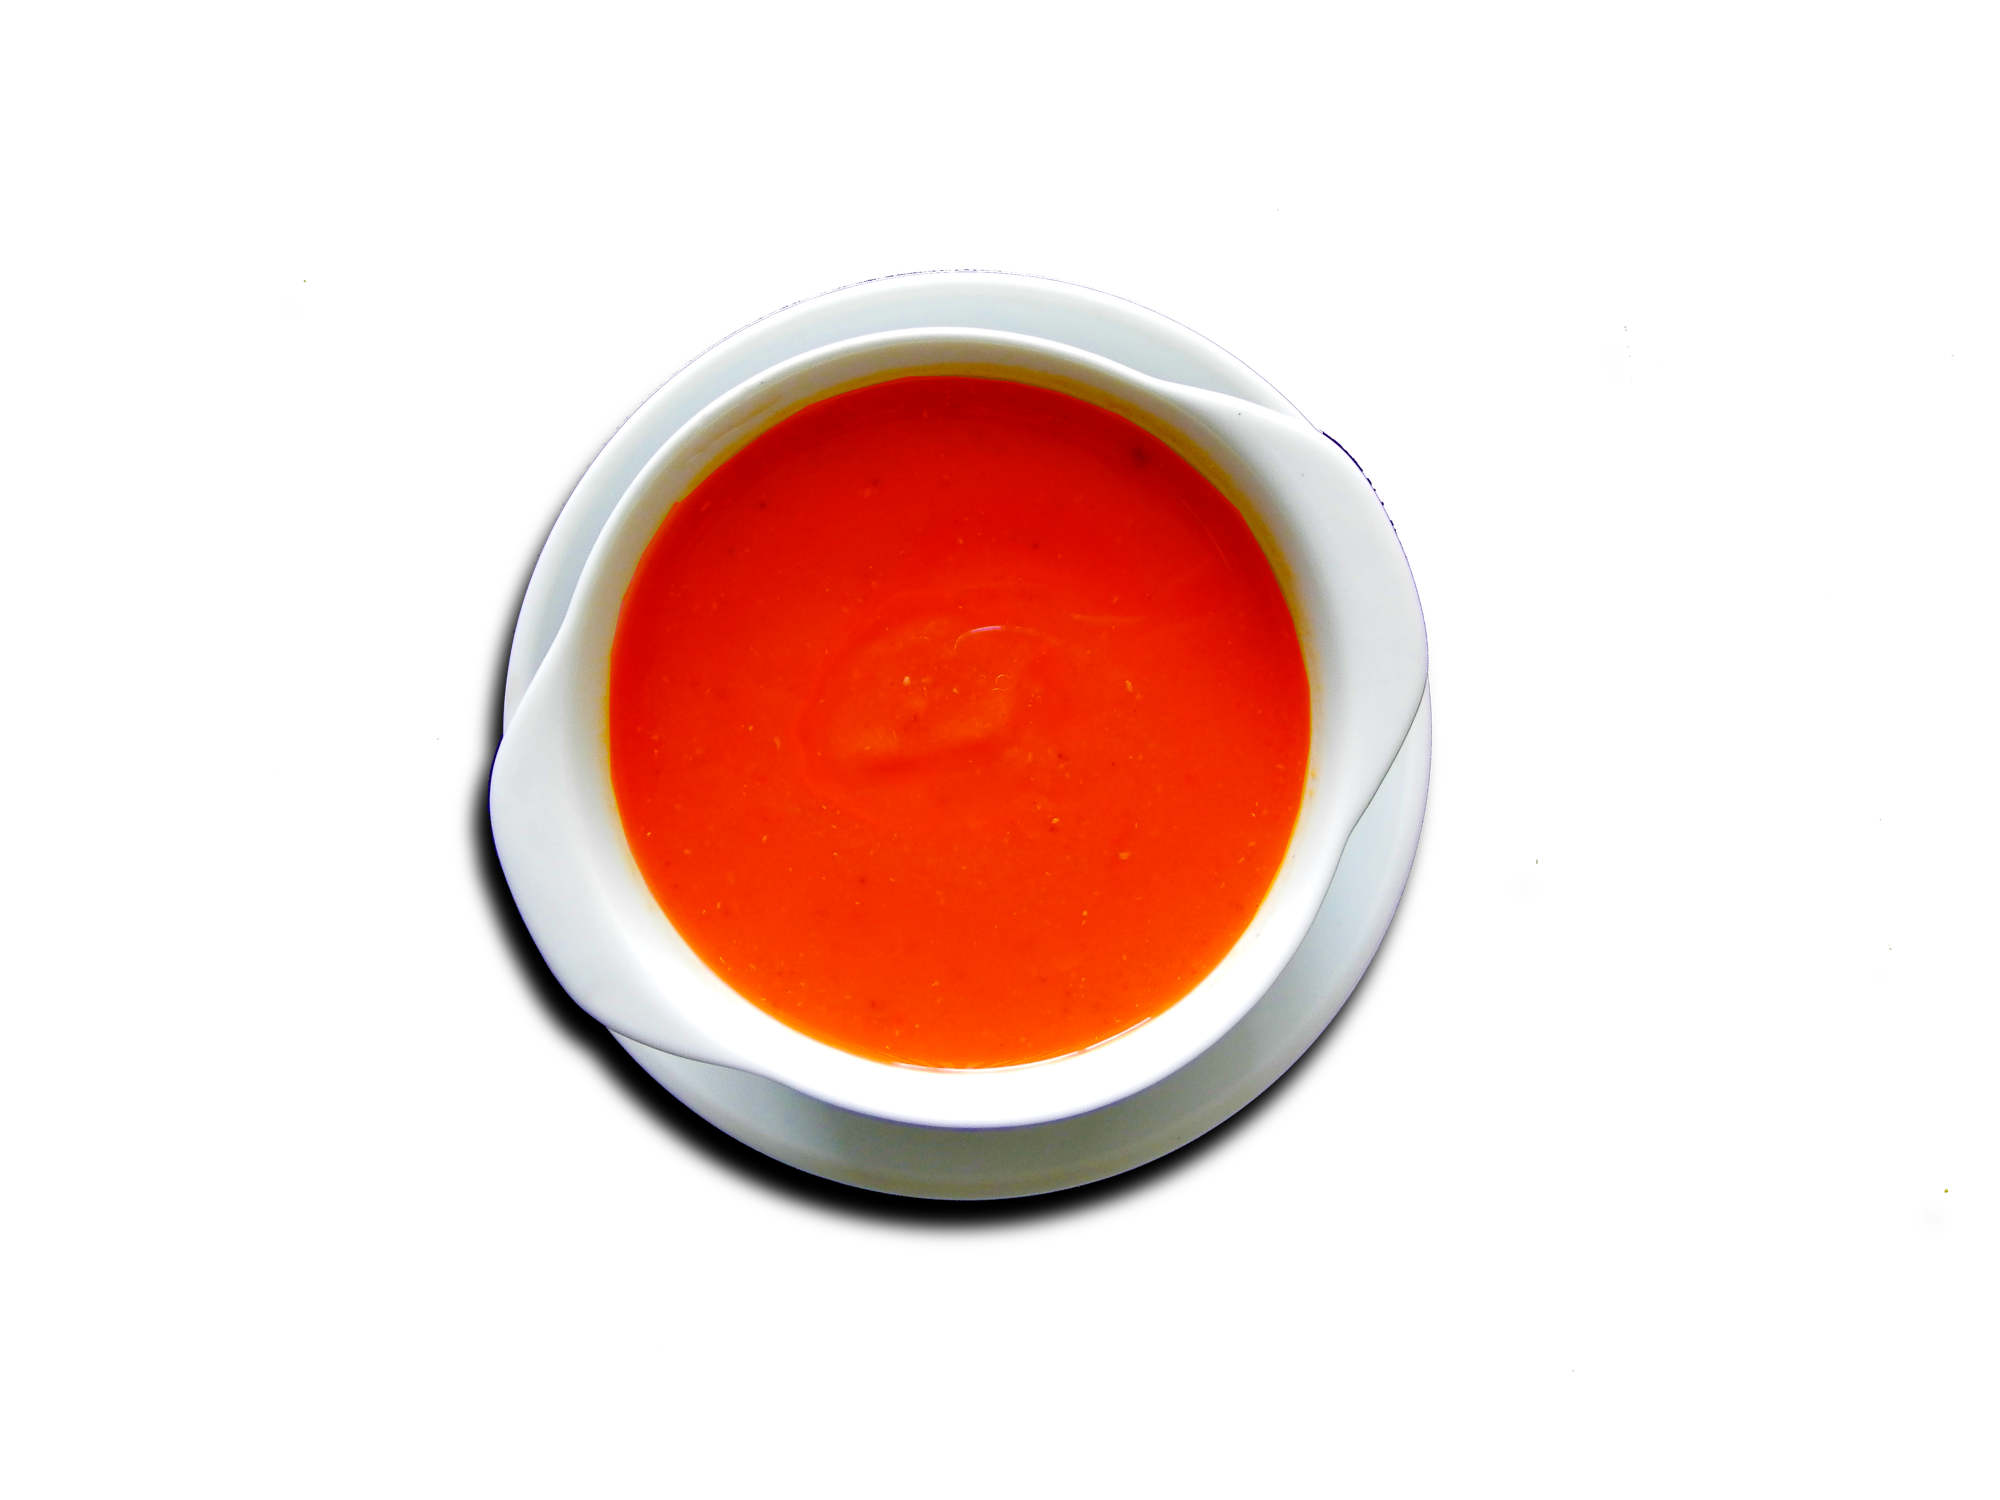 Tomatencremesuppe